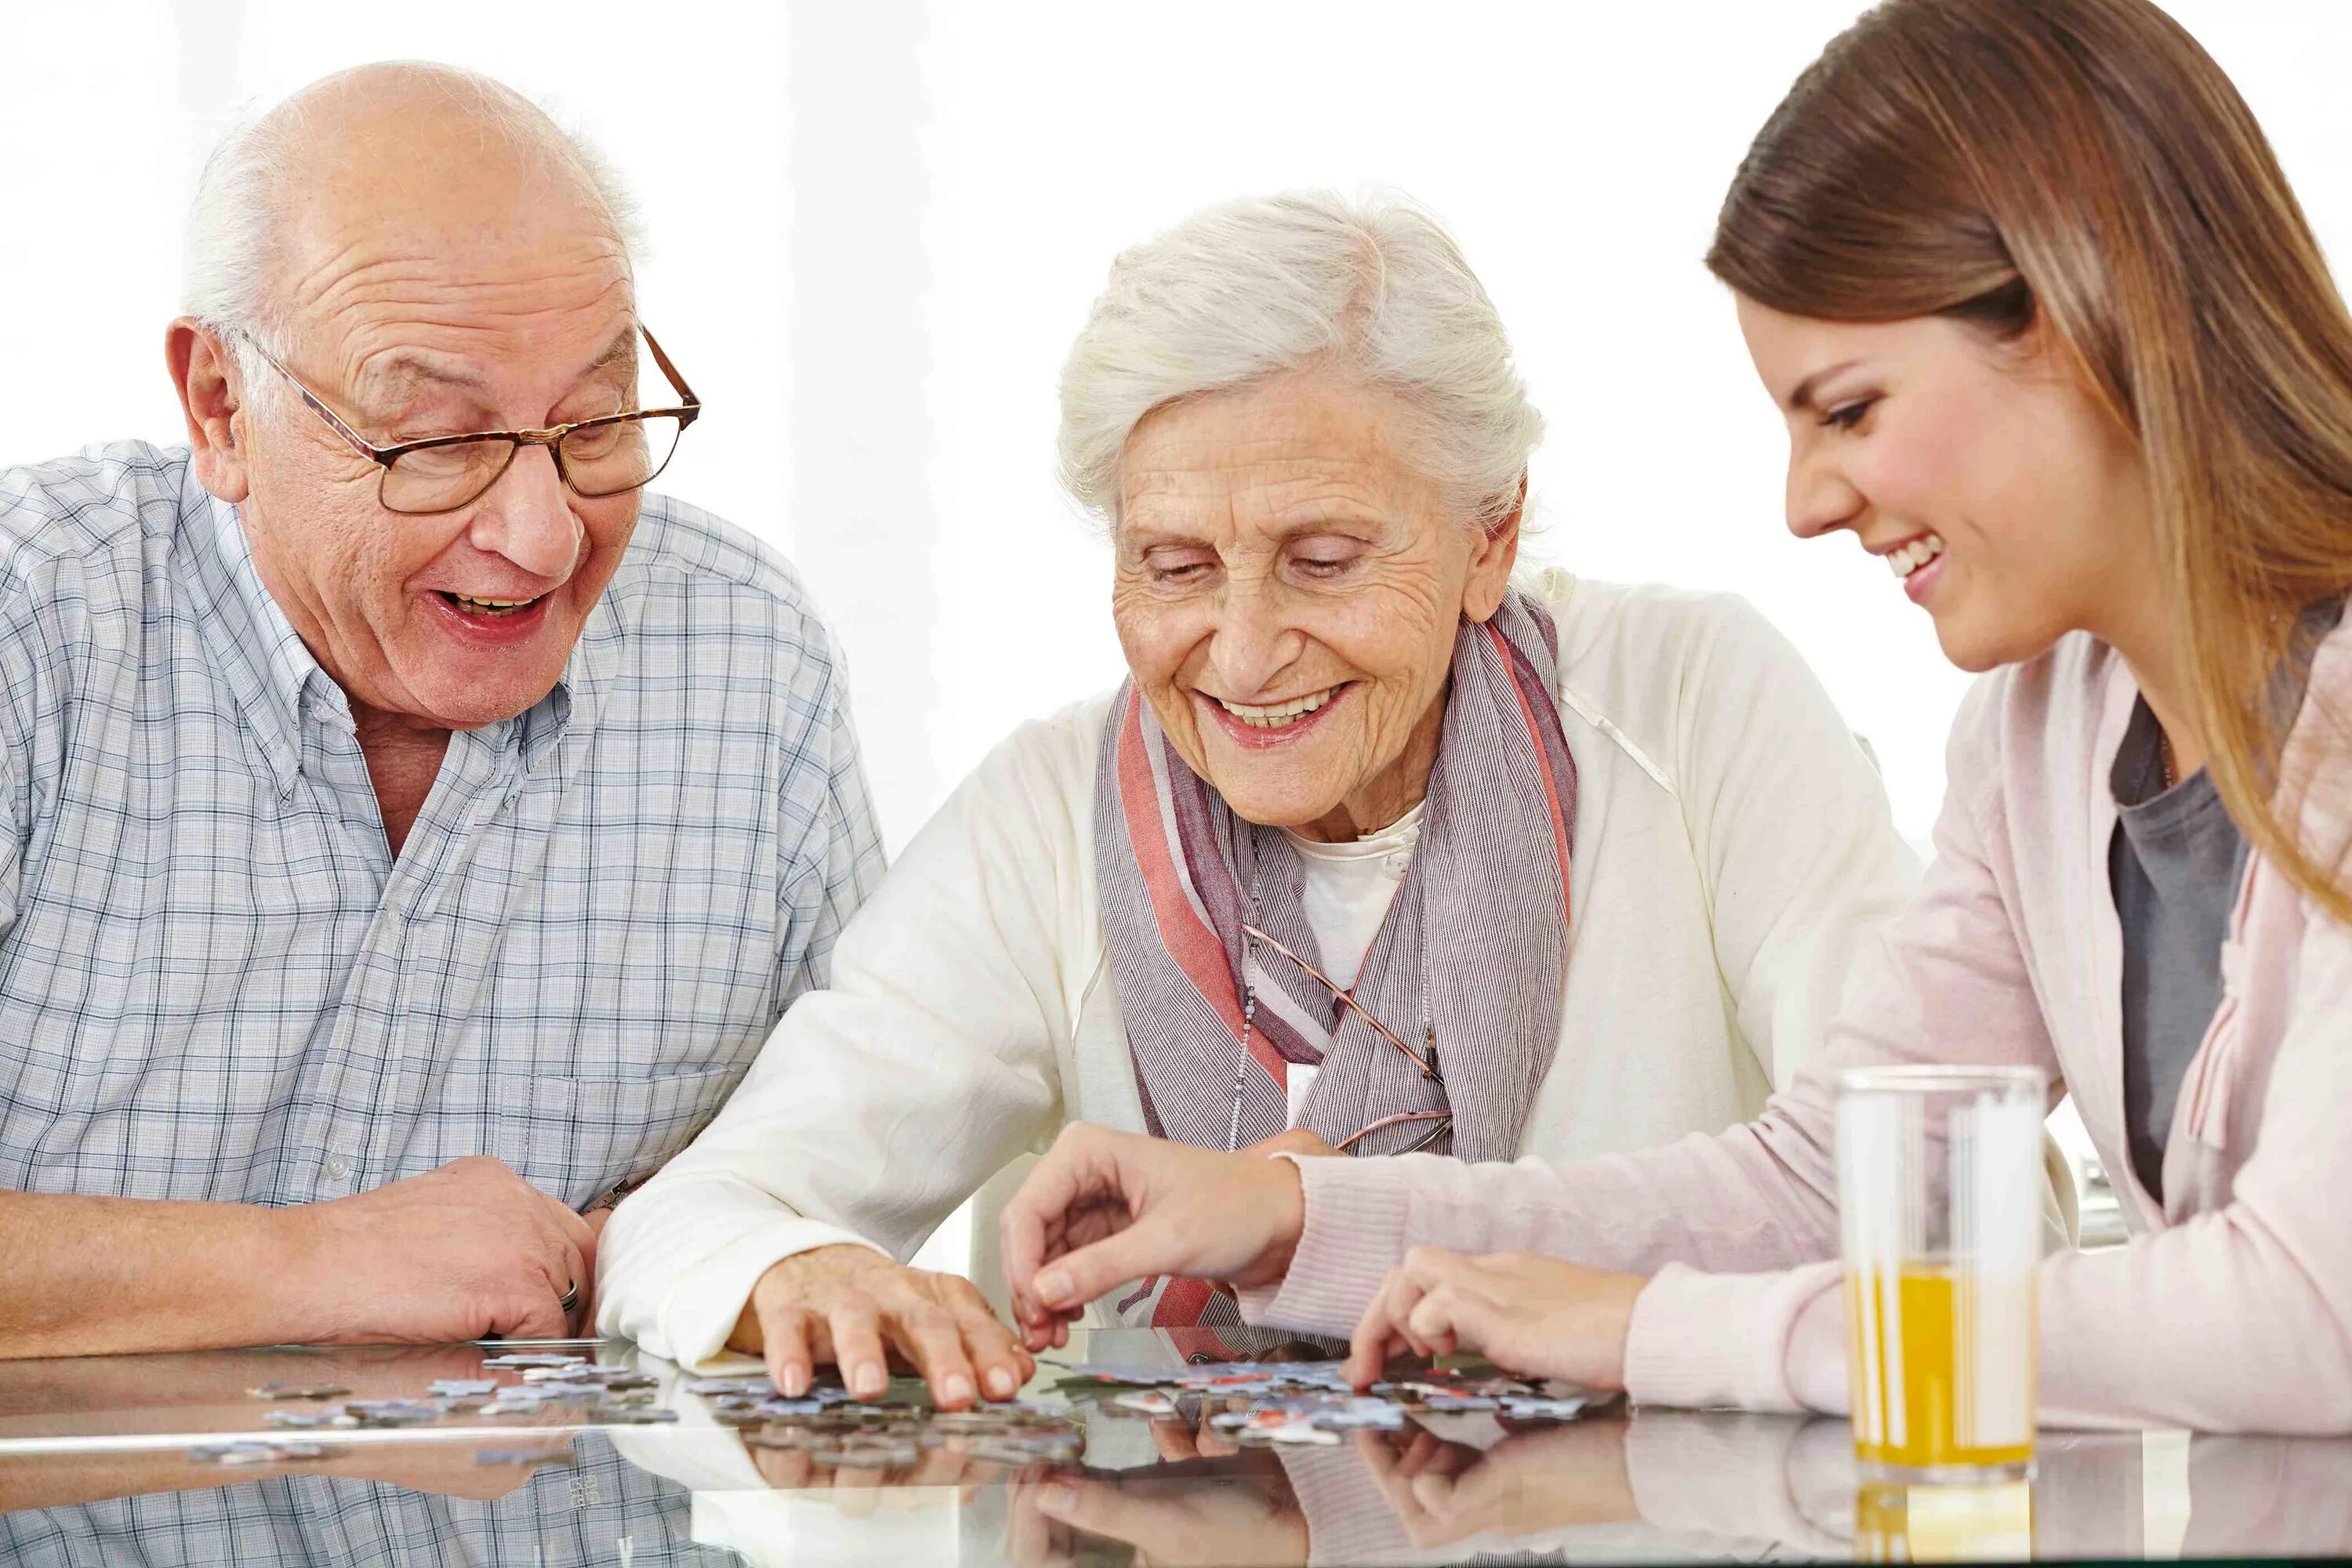 Разговор с пожилым человеком. Разговорполжилых людей. Общение с пожилыми людьми. Пожилые люди.